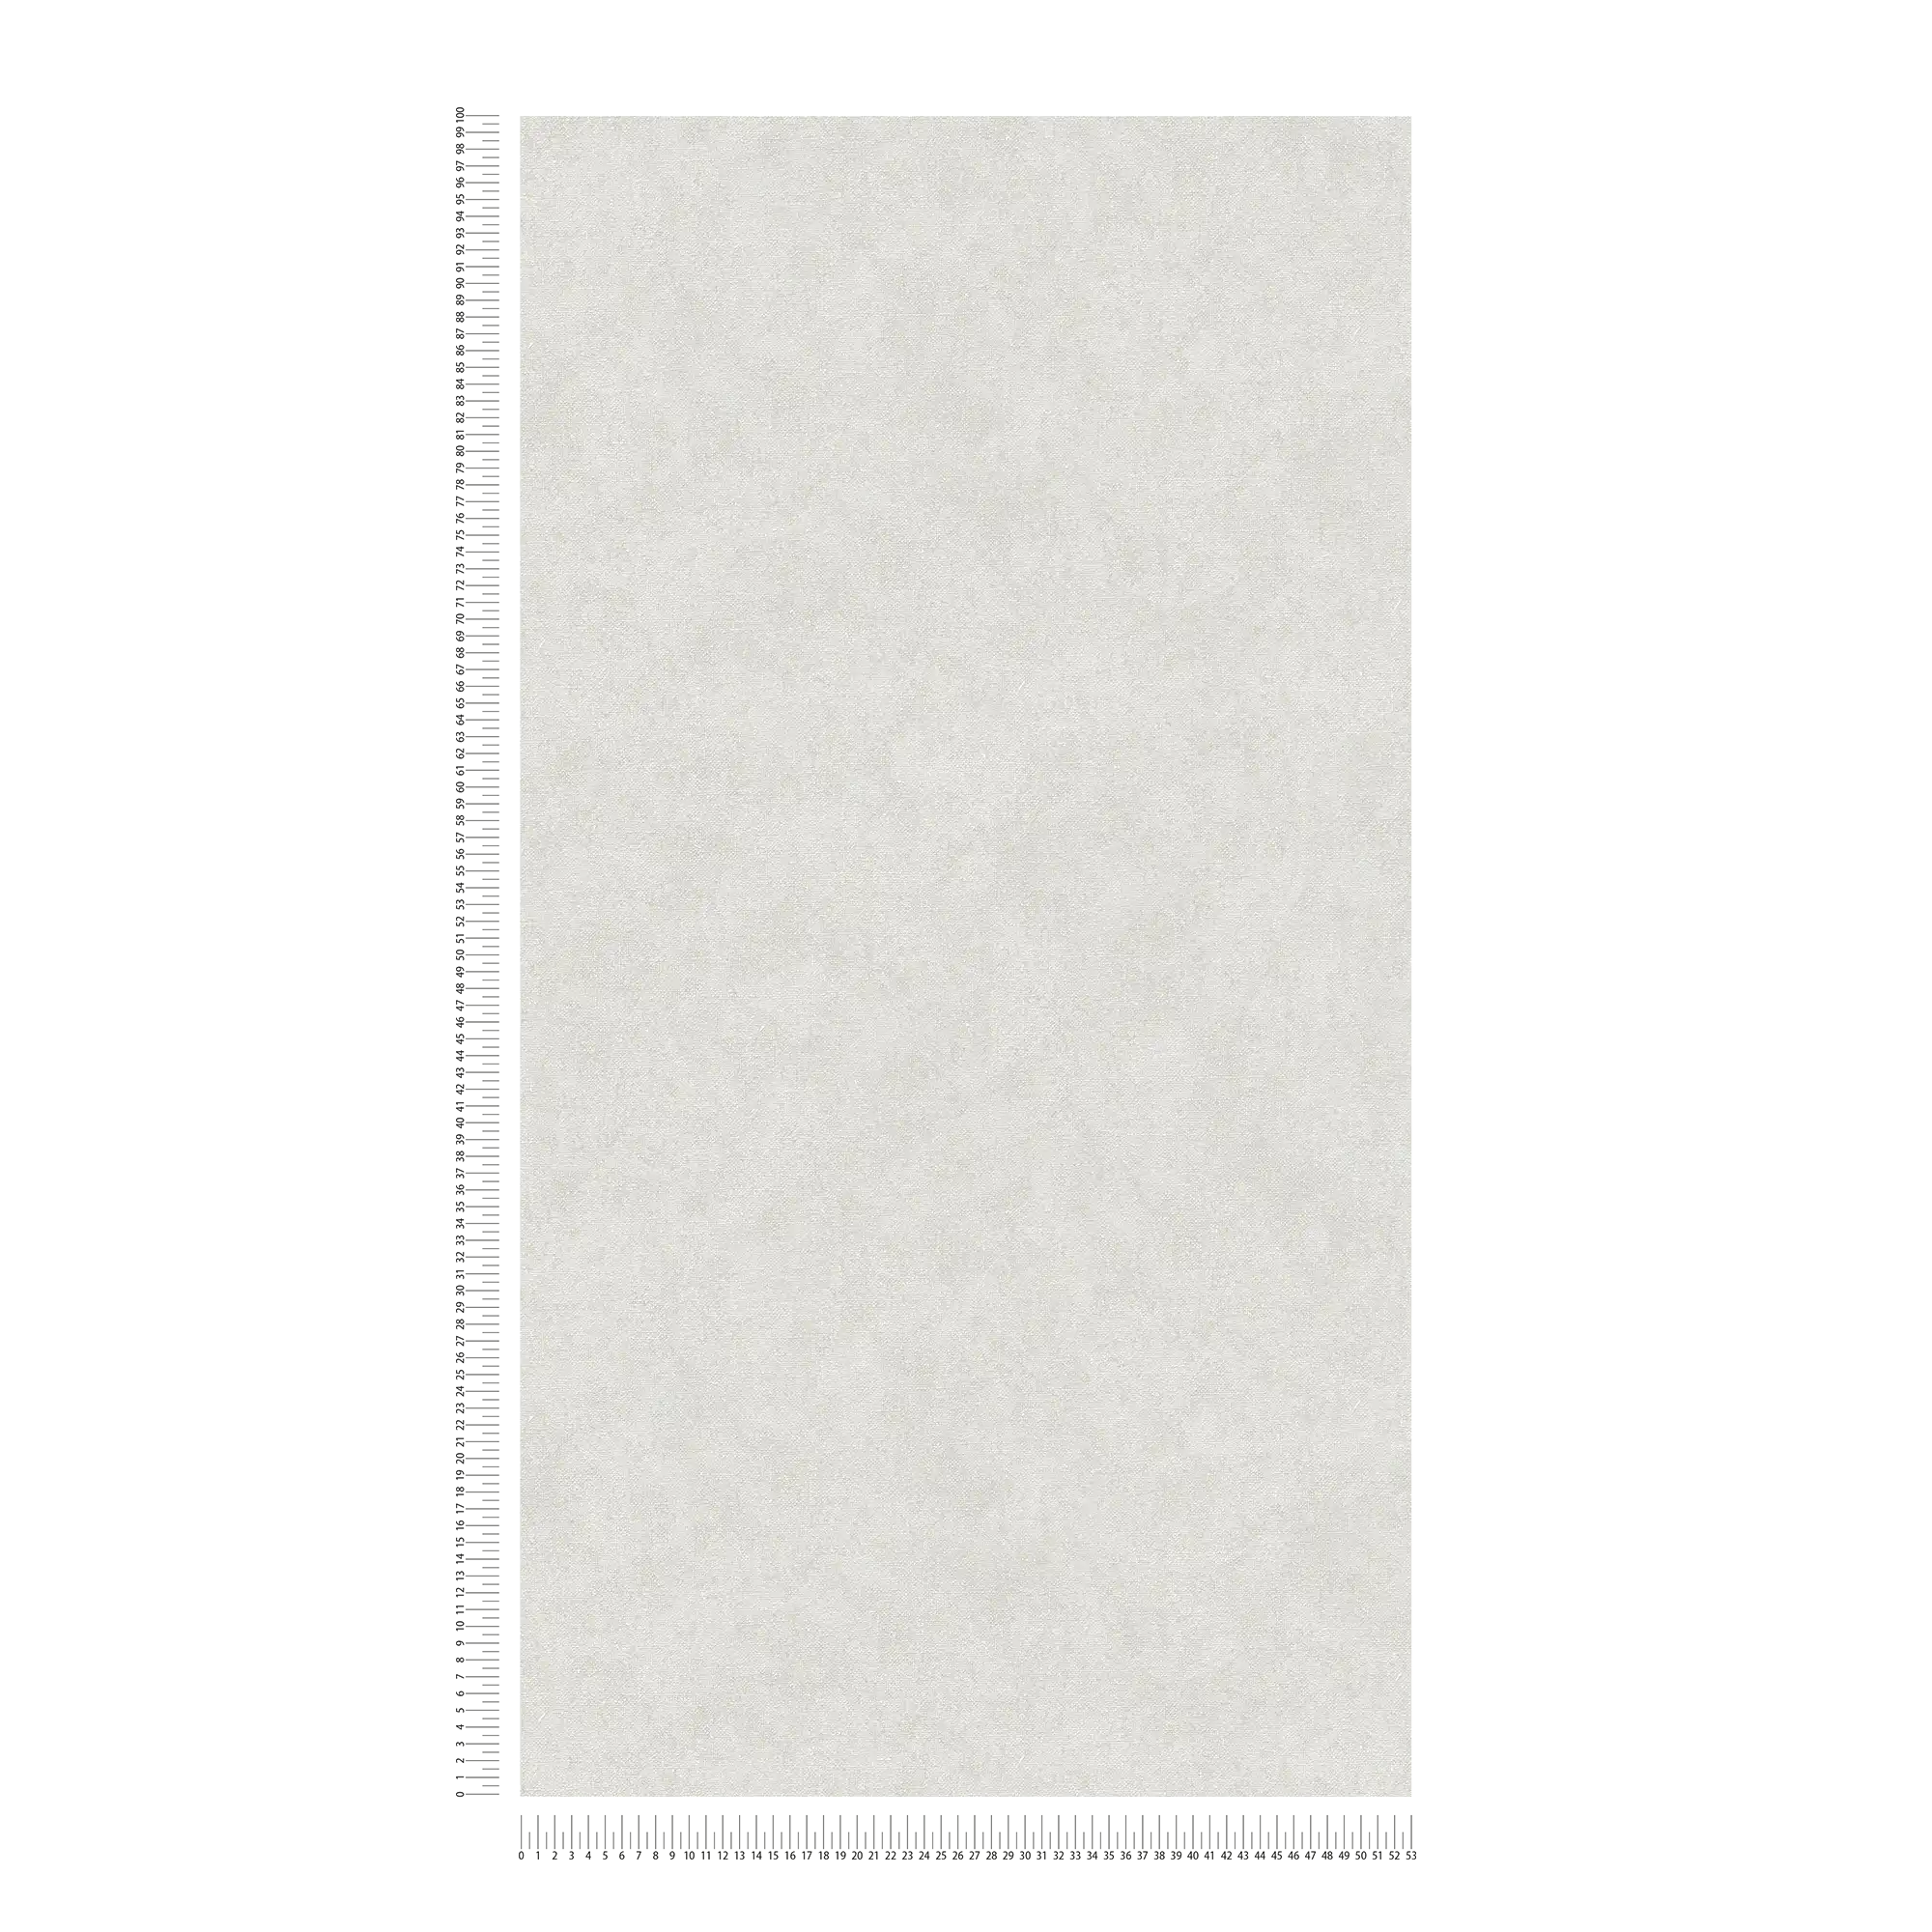             Carta da parati unitaria grigio chiaro con aspetto tessile - Grigio
        